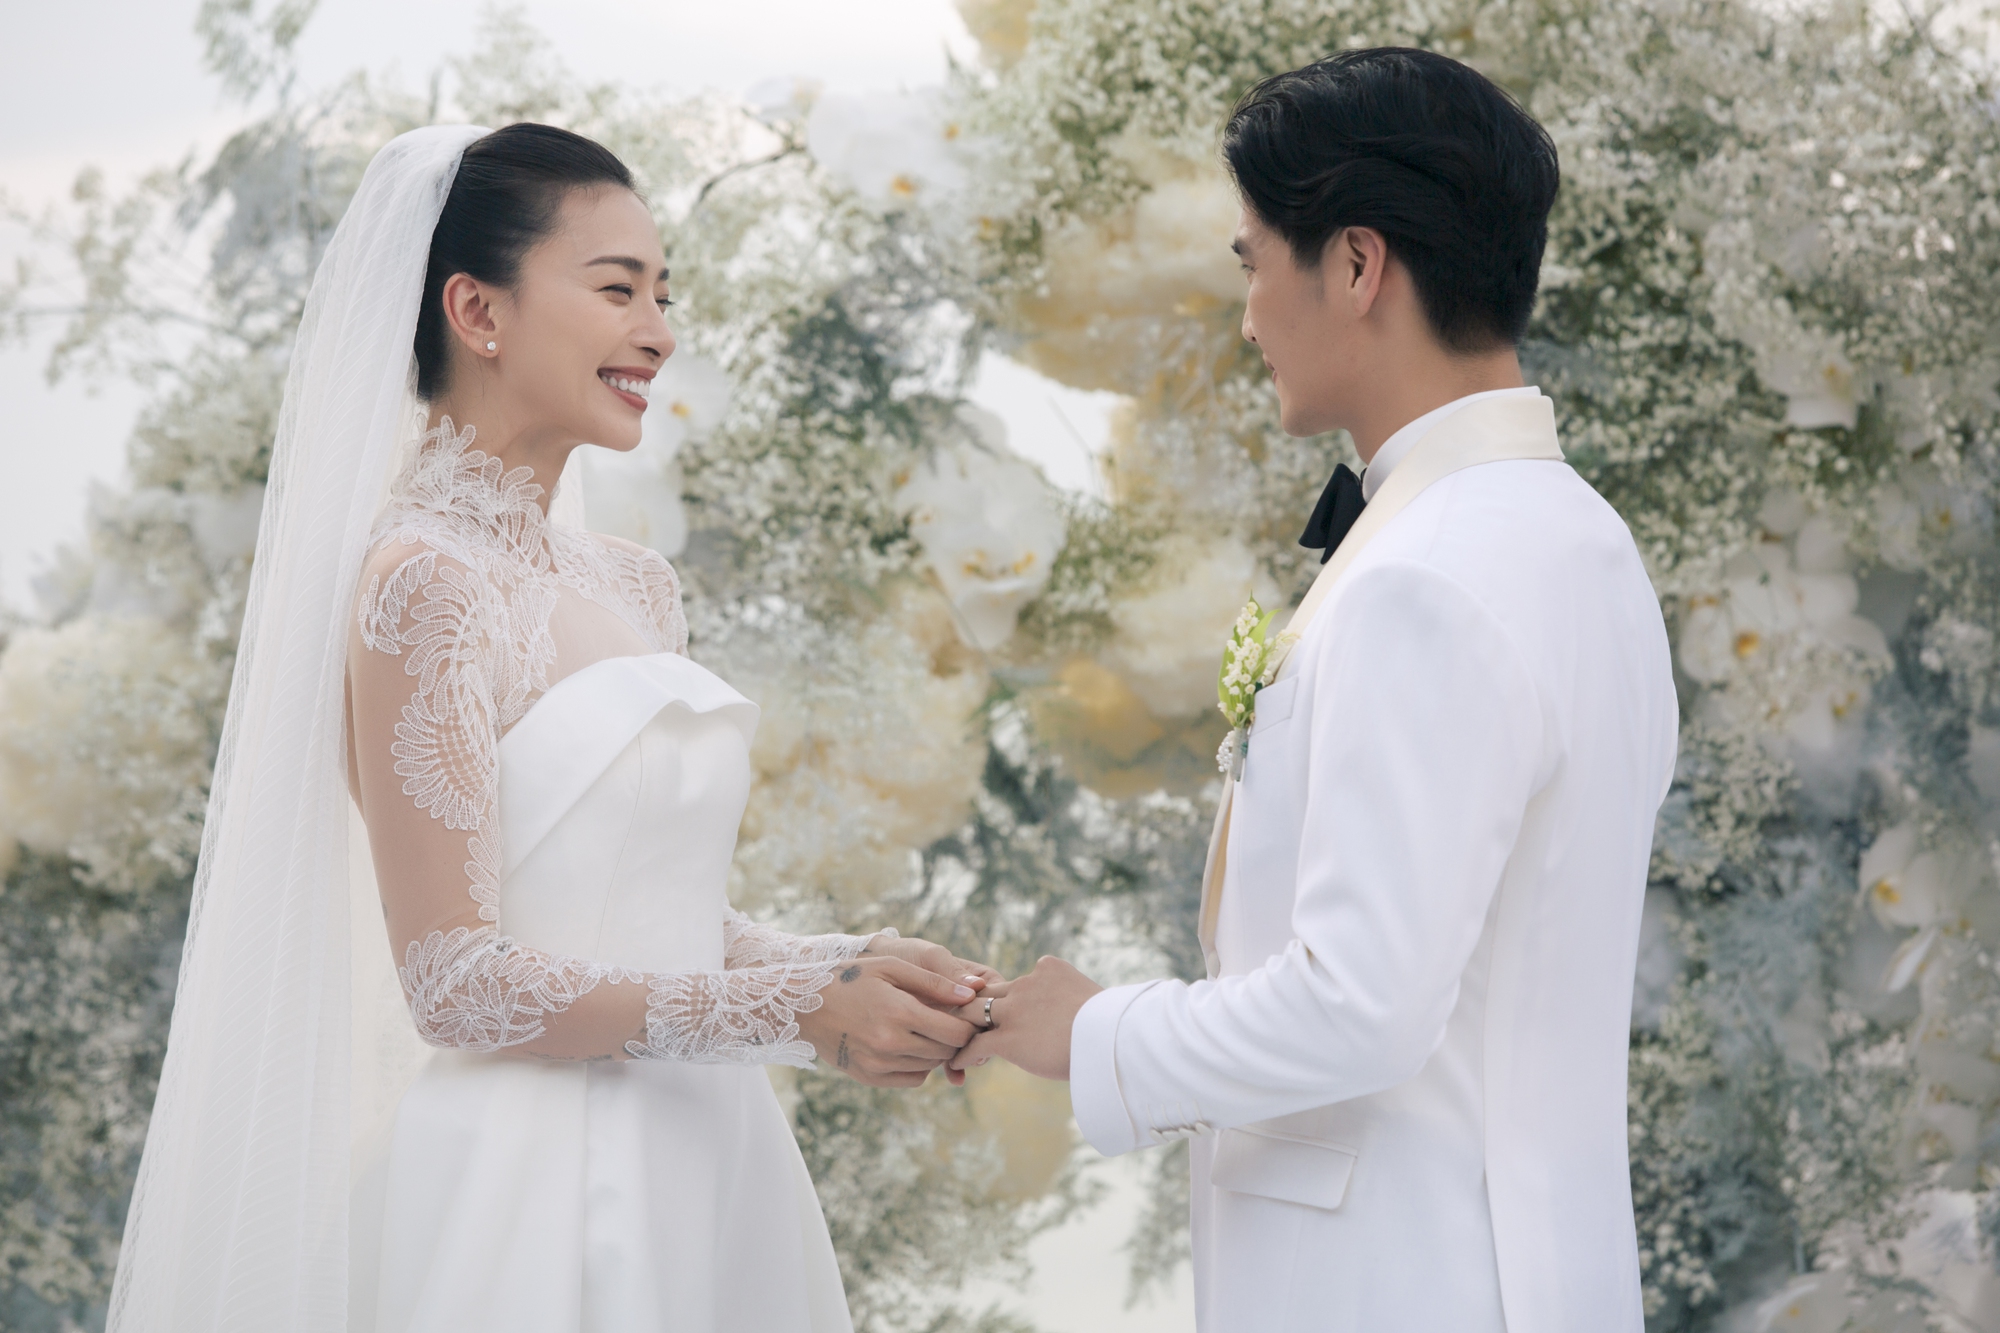 Những khoảnh khắc ngọt ngào trong đám cưới Song Joong Ki và Song Hye Kyo   Báo Quảng Ninh điện tử